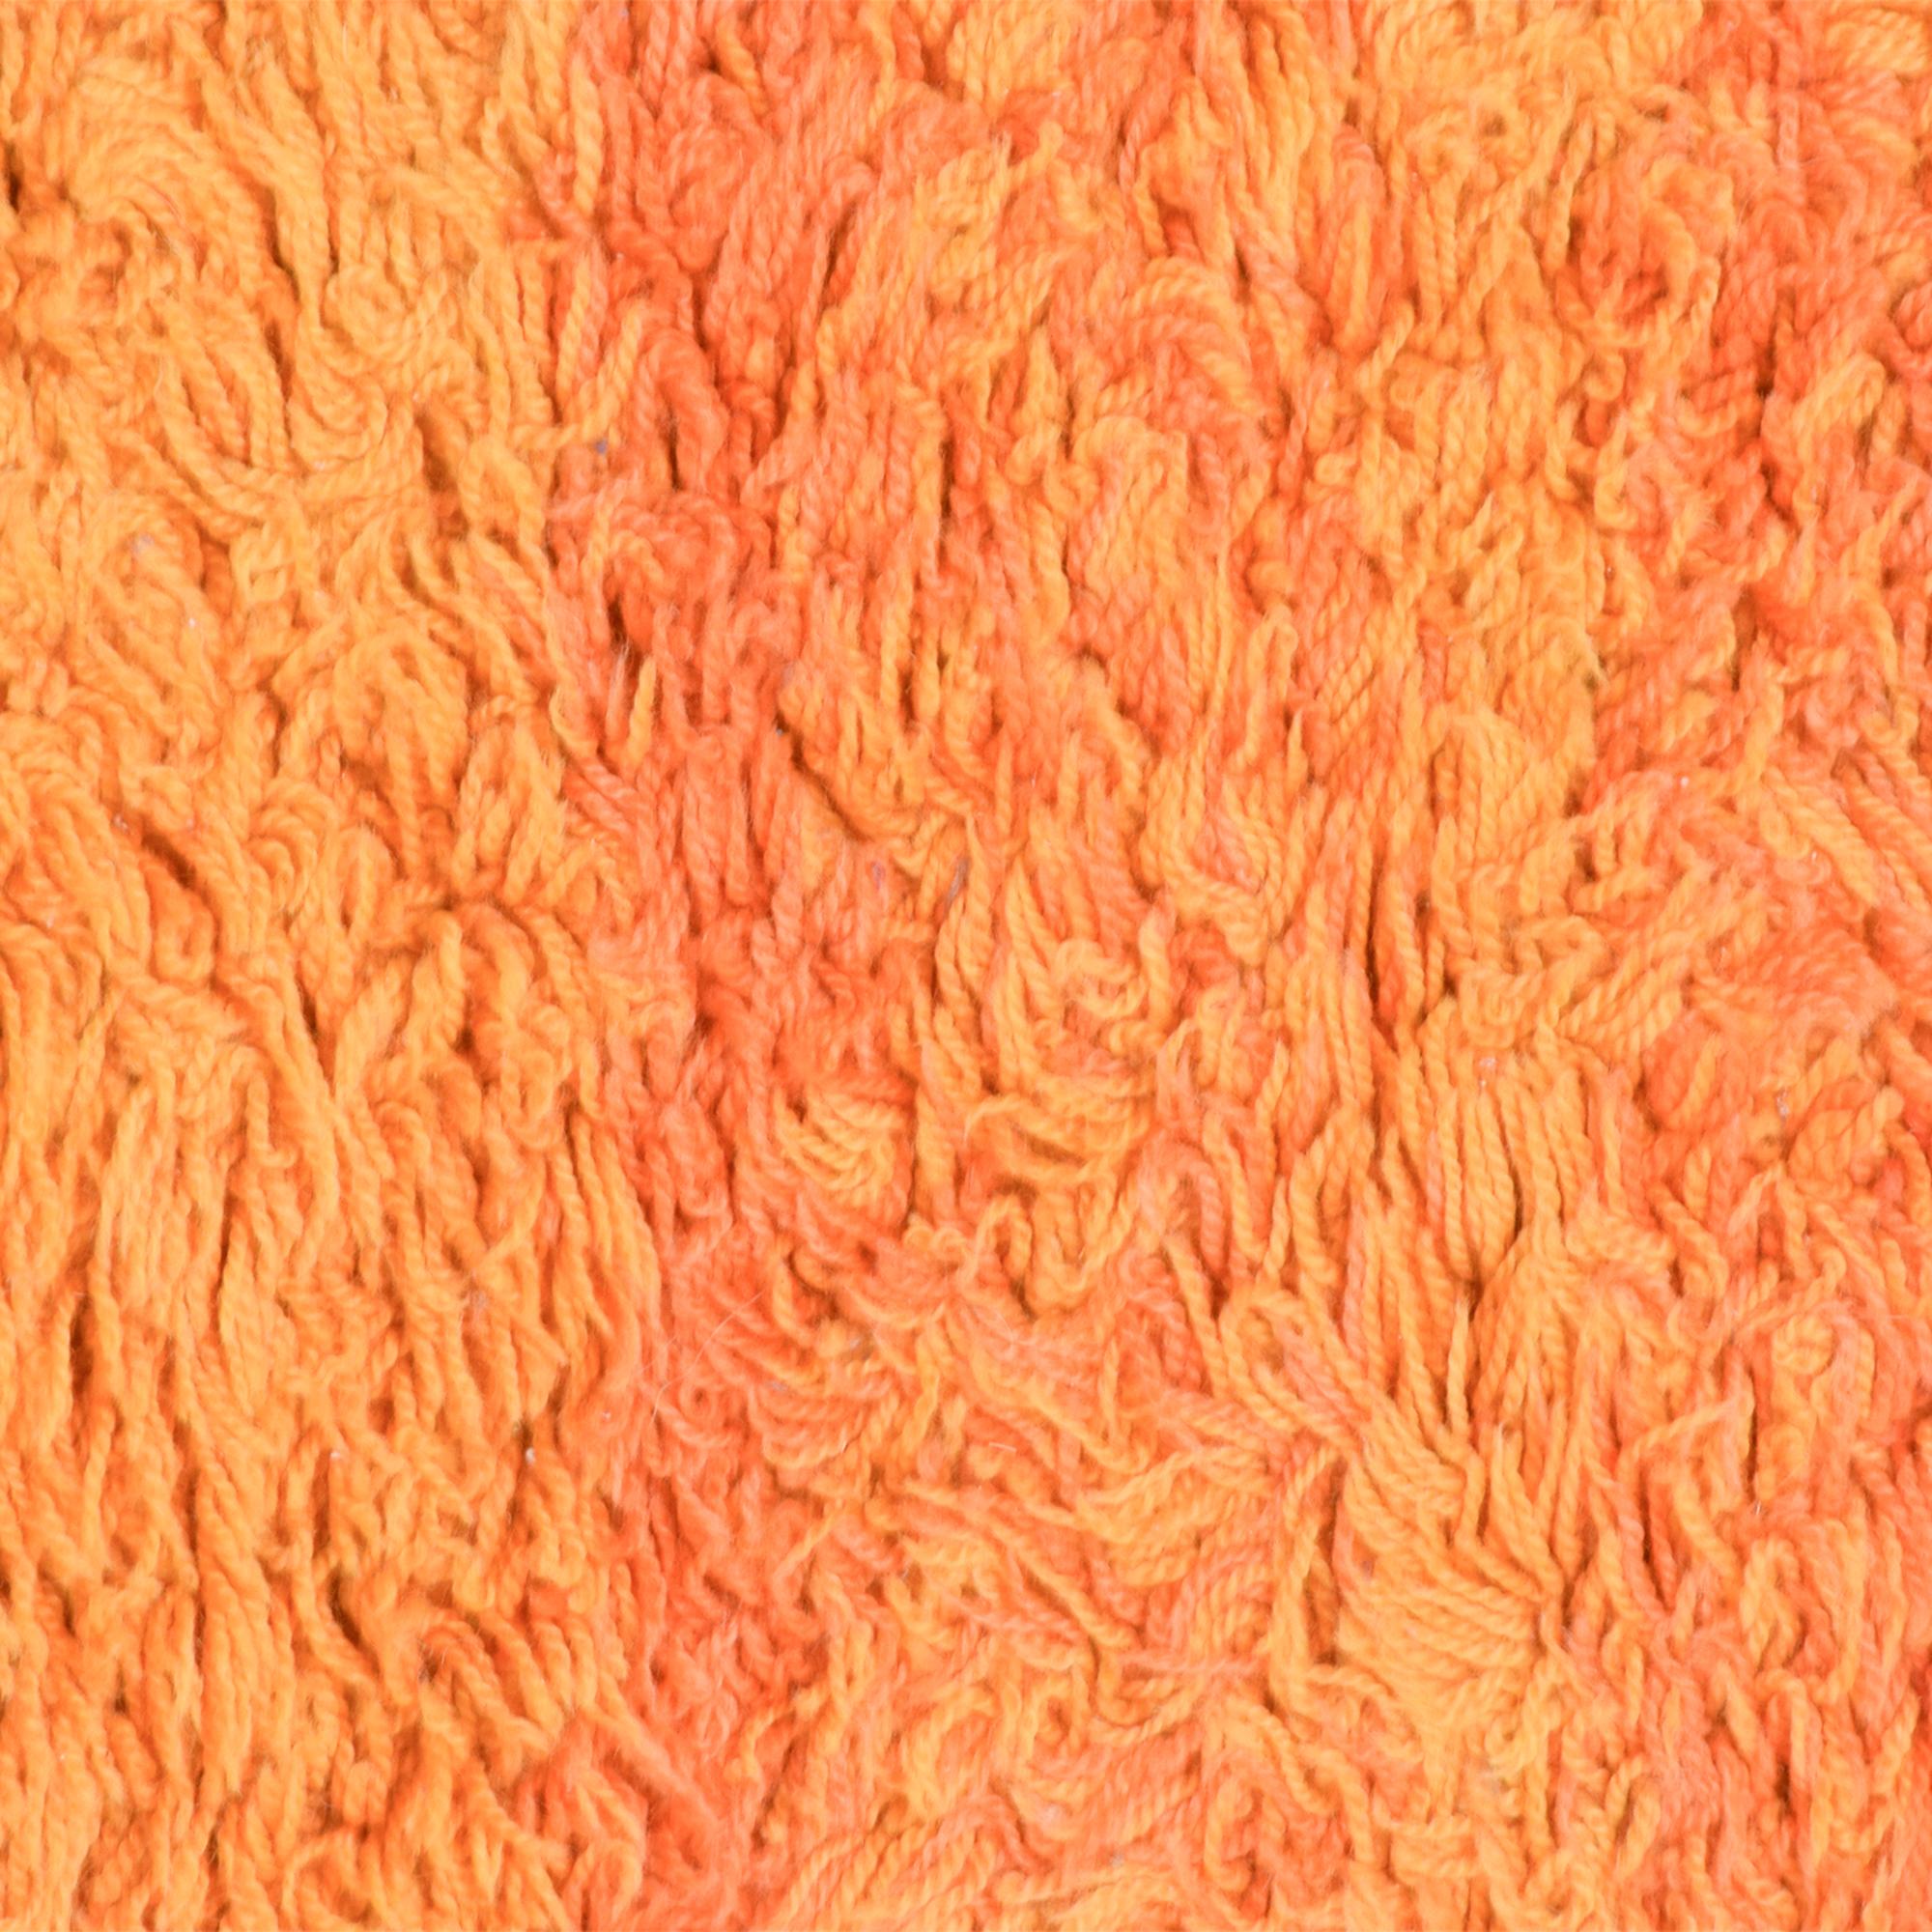 Cotton 1960s Vibrant Orange Rya Rug Tapestry Scandinavian Modern Denmark